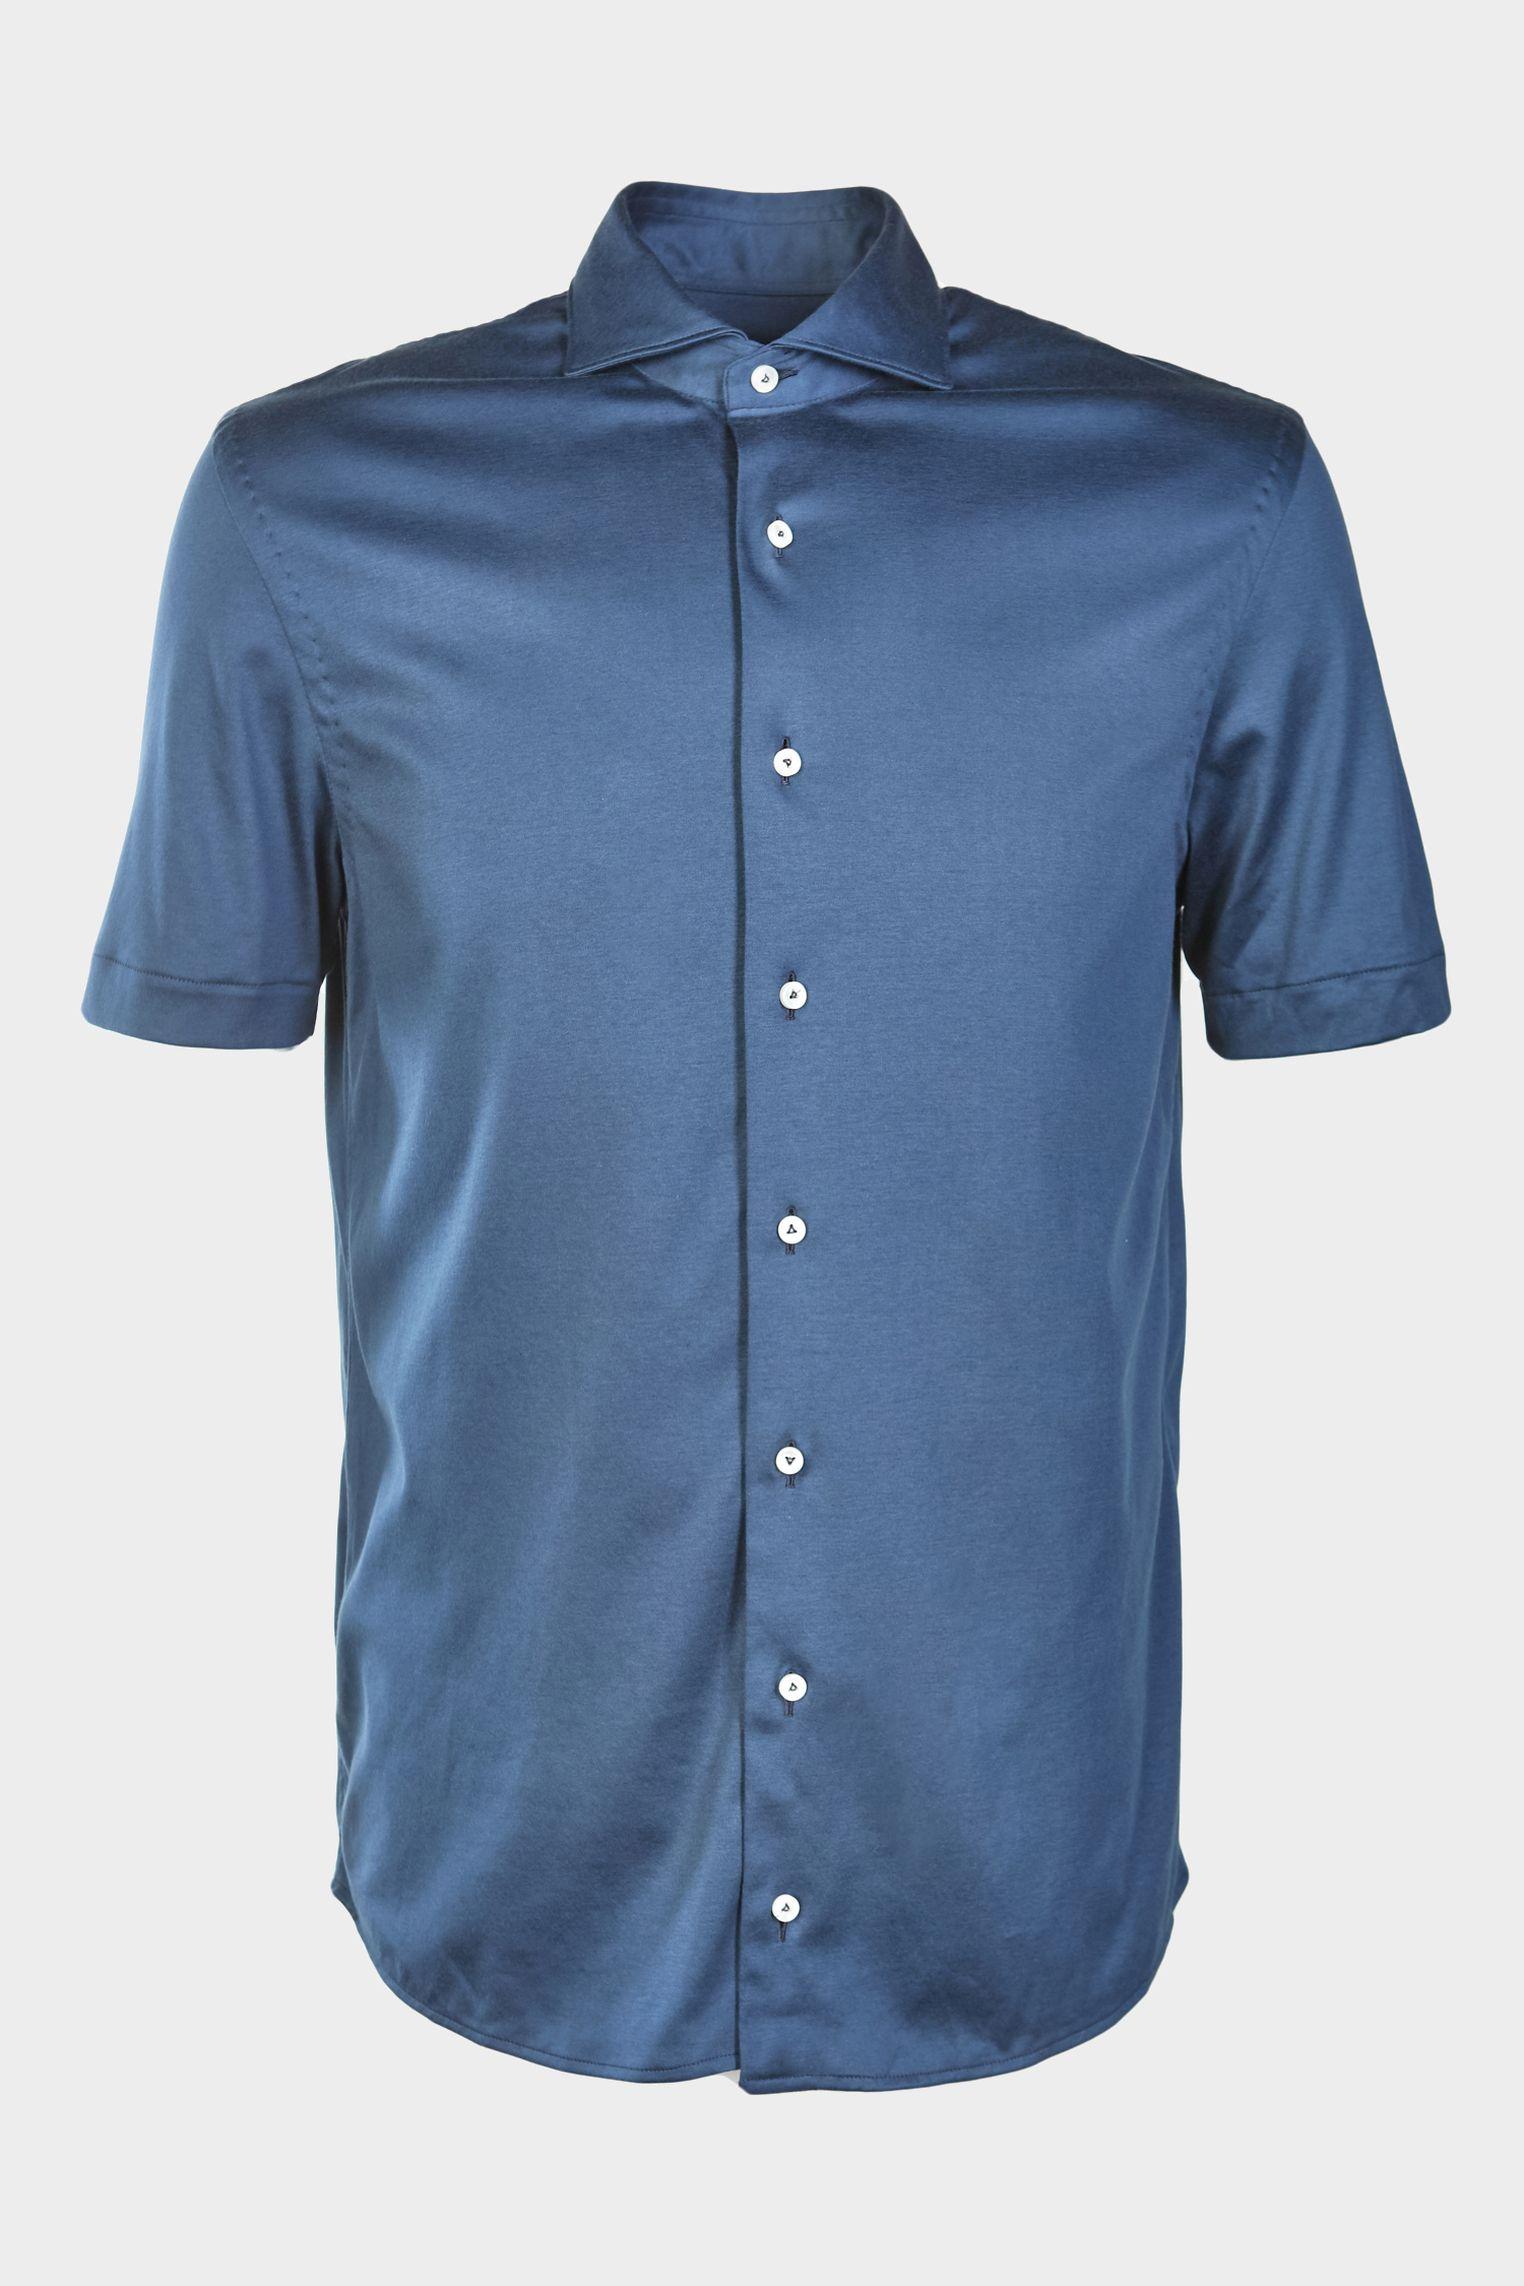 рубашка M PERON SSF синий M-PERON-SSF_180031_770 ,photo 1